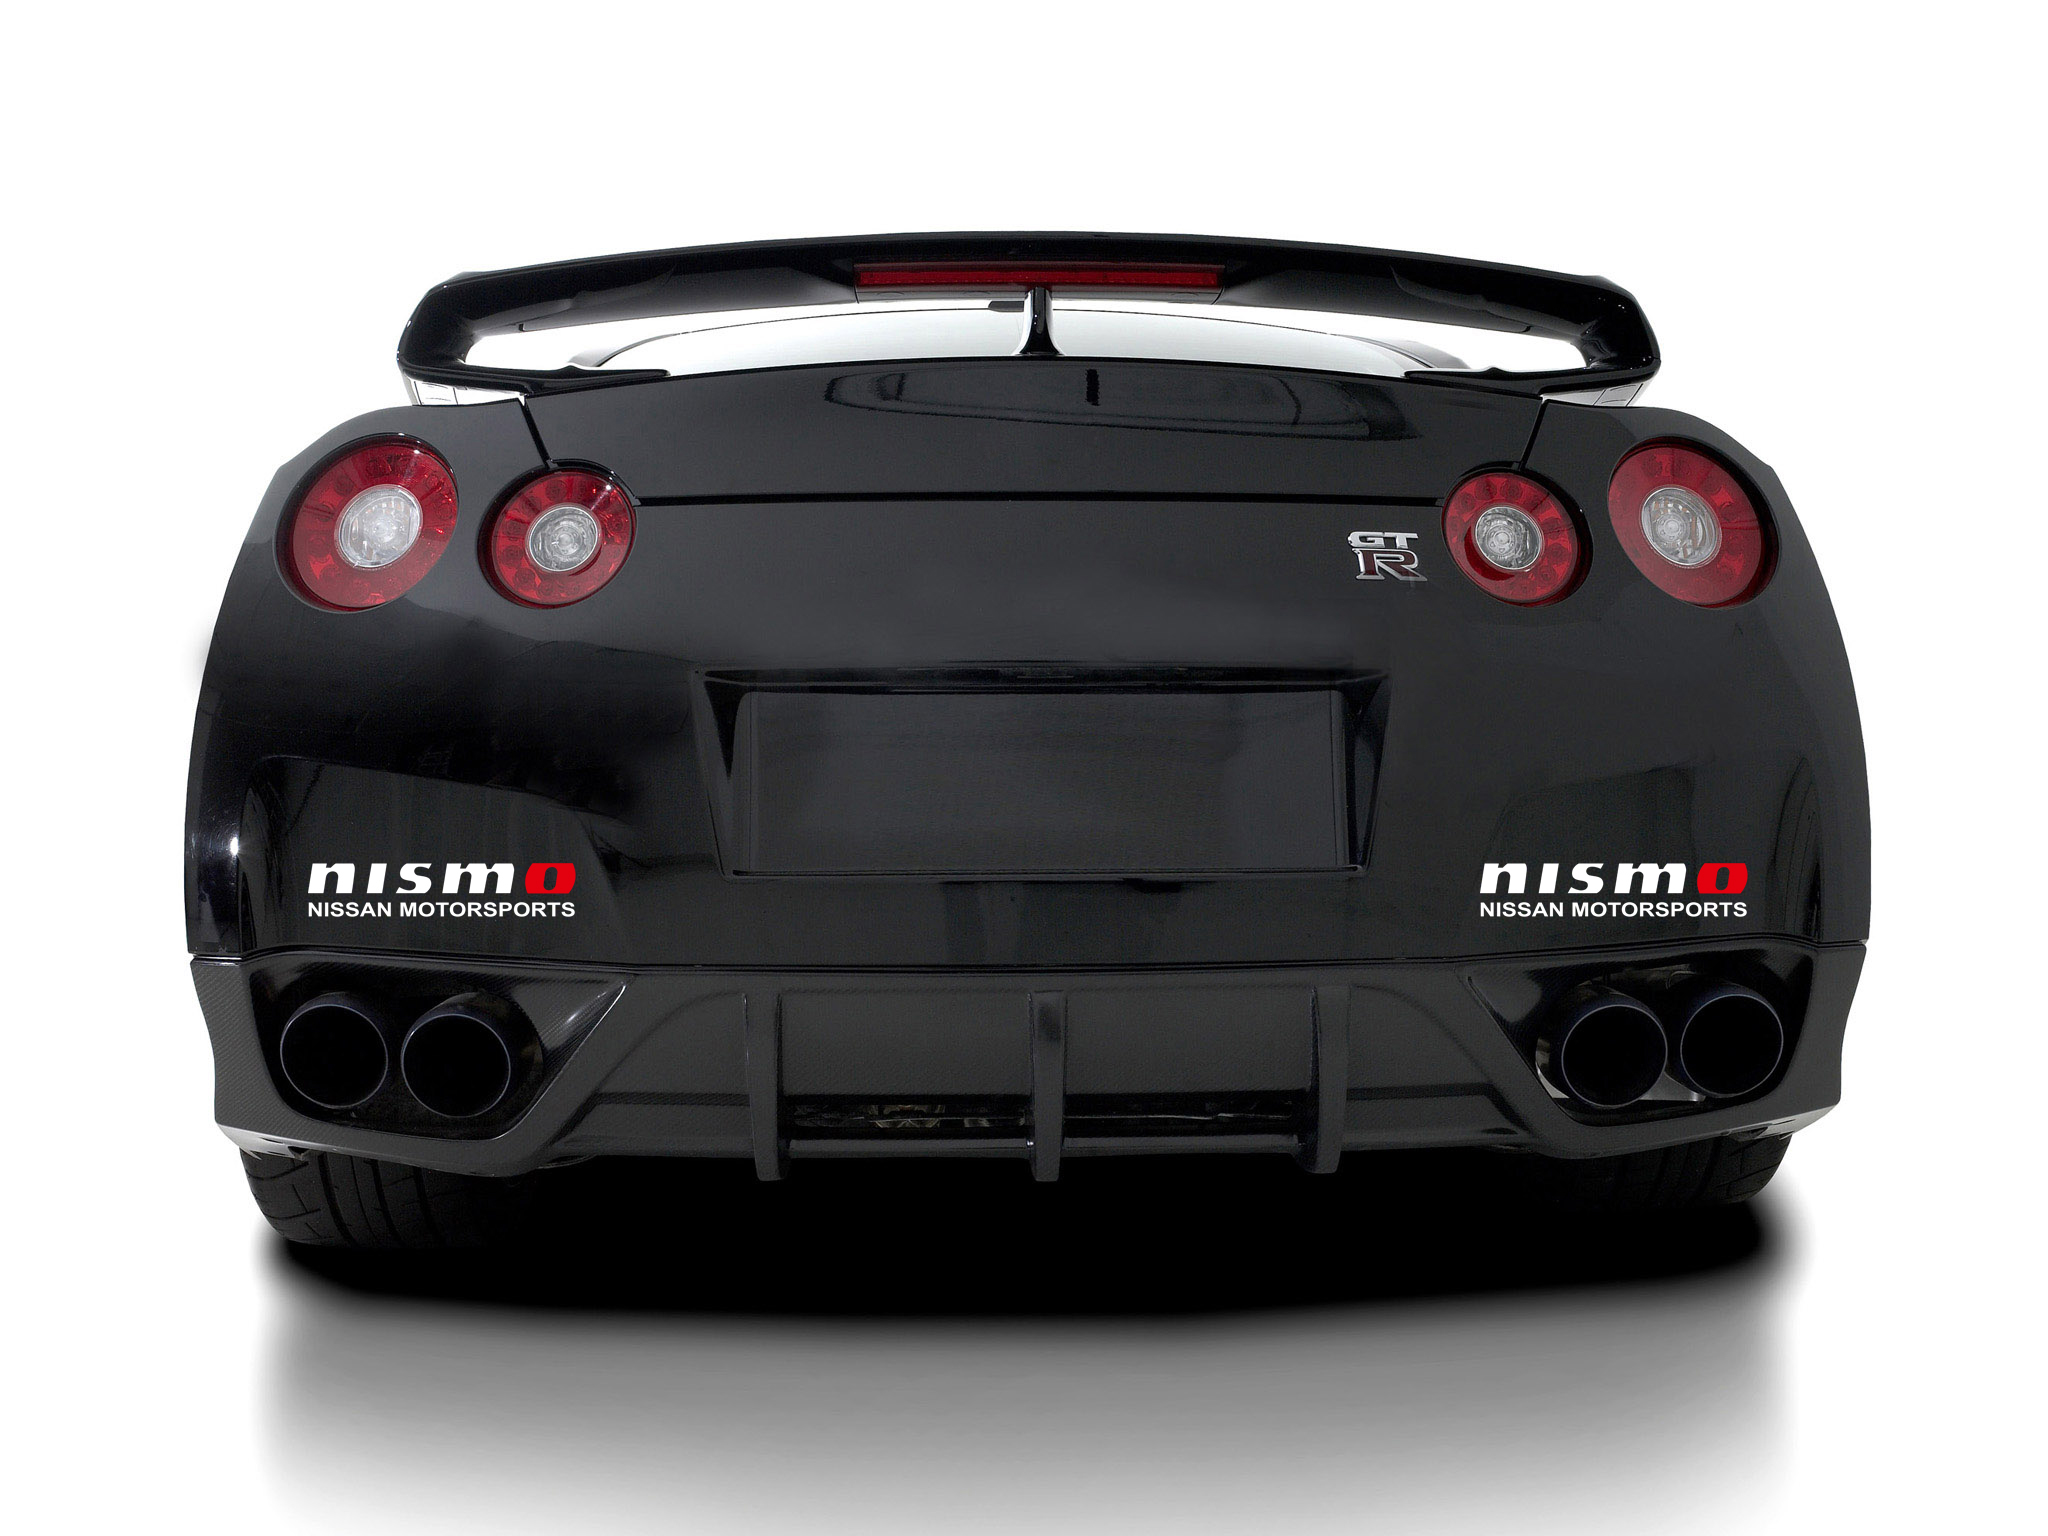 Lot de 2 autocollants en vinyle NISMO Nissan Motorsports Racing pour GTR Altima 350Z 370Z.